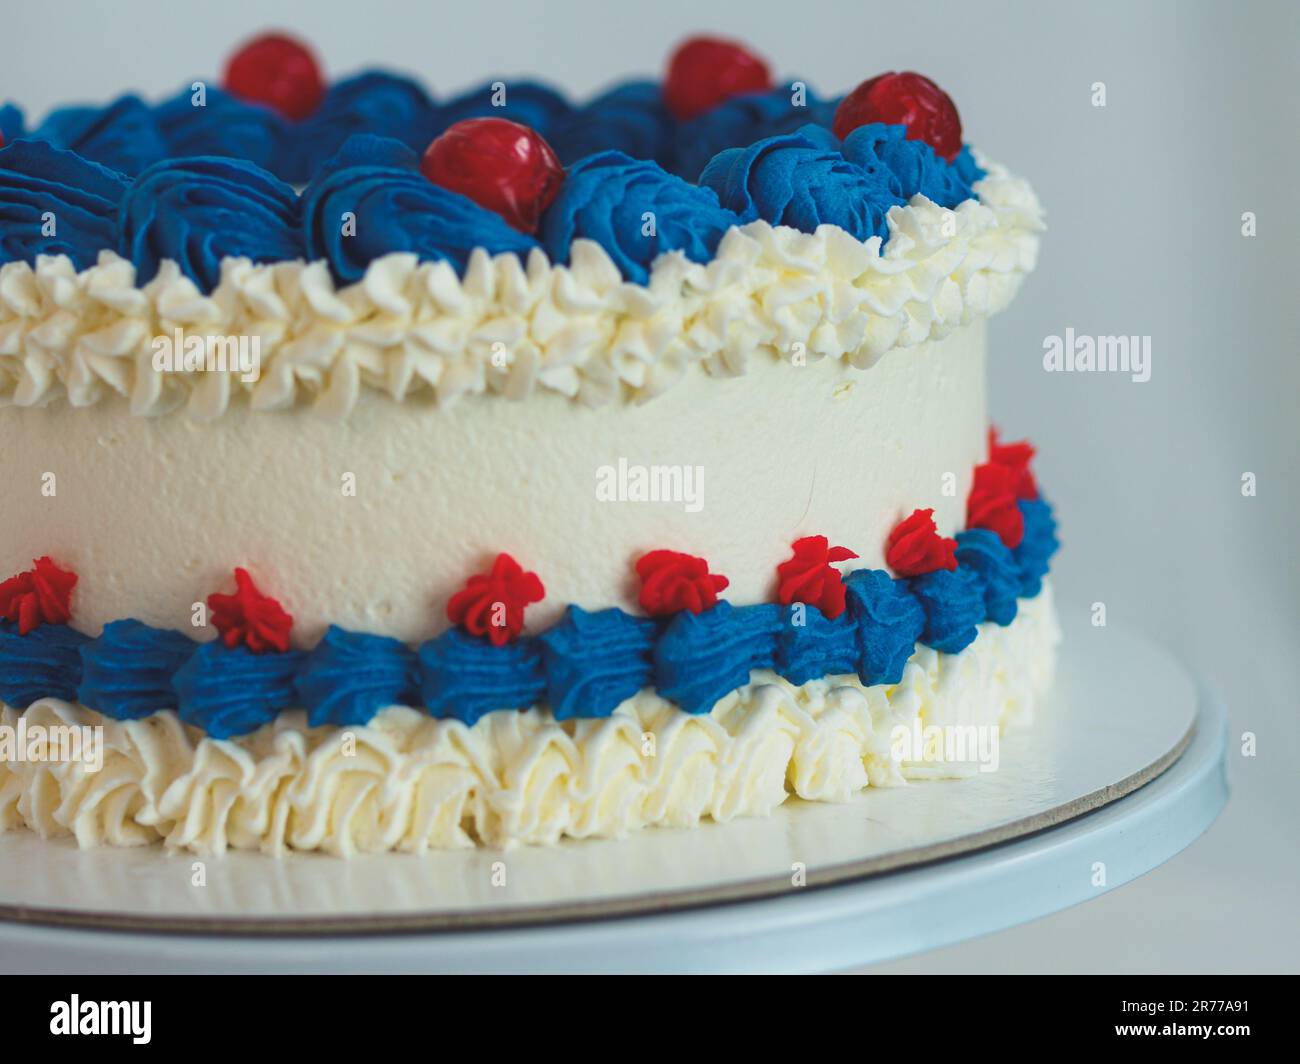 gâteau givré blanc bleu rouge isolé sur fond blanc de studio. Couleurs du drapeau américain. Célébration. Banque D'Images